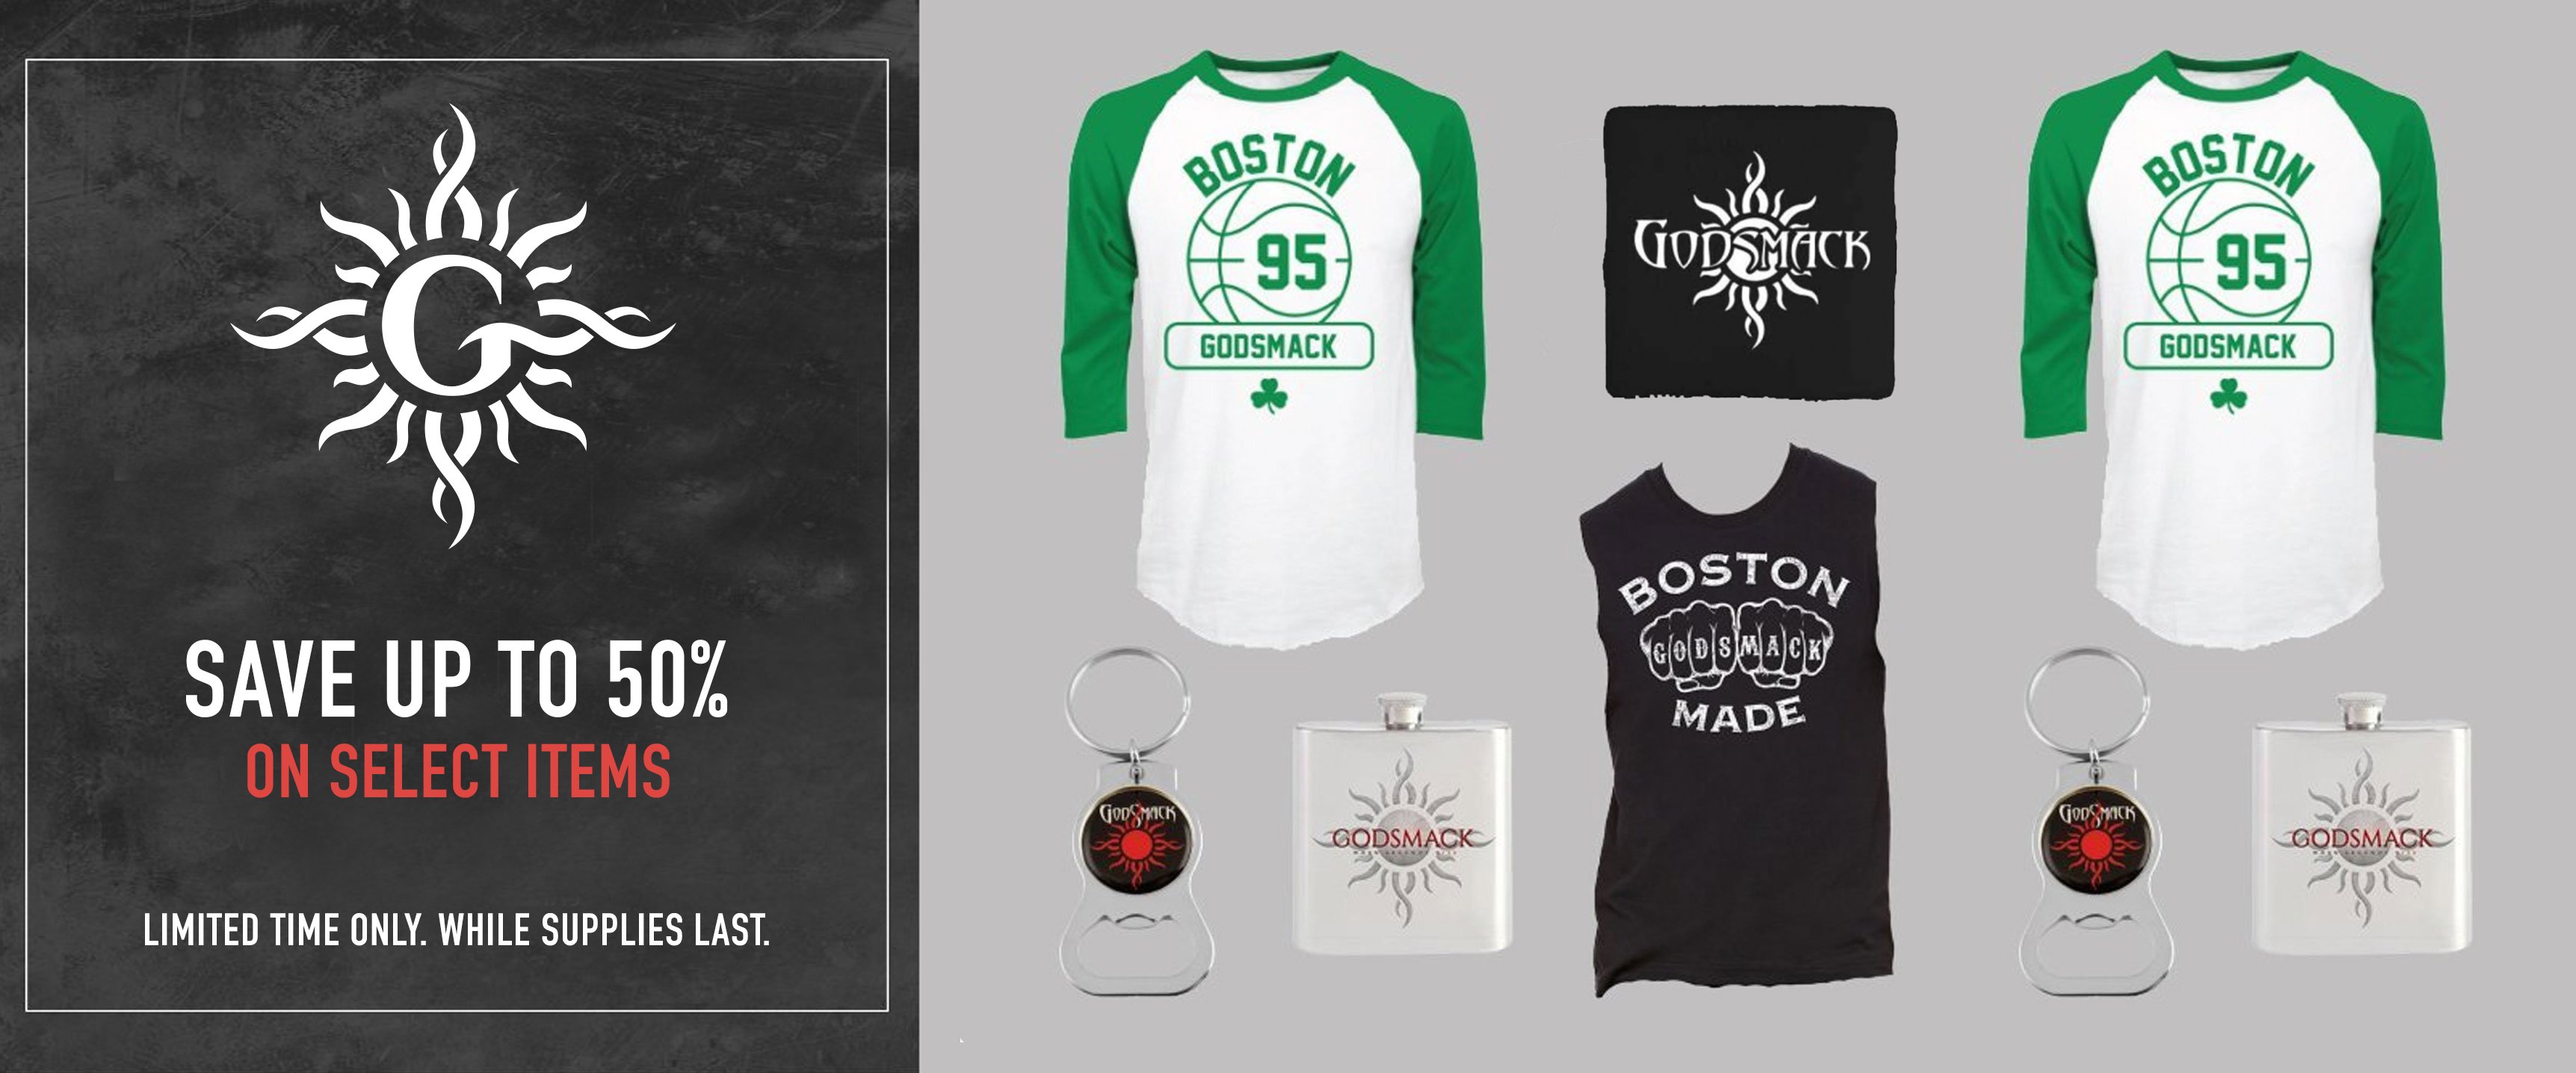 Godsmack clothing